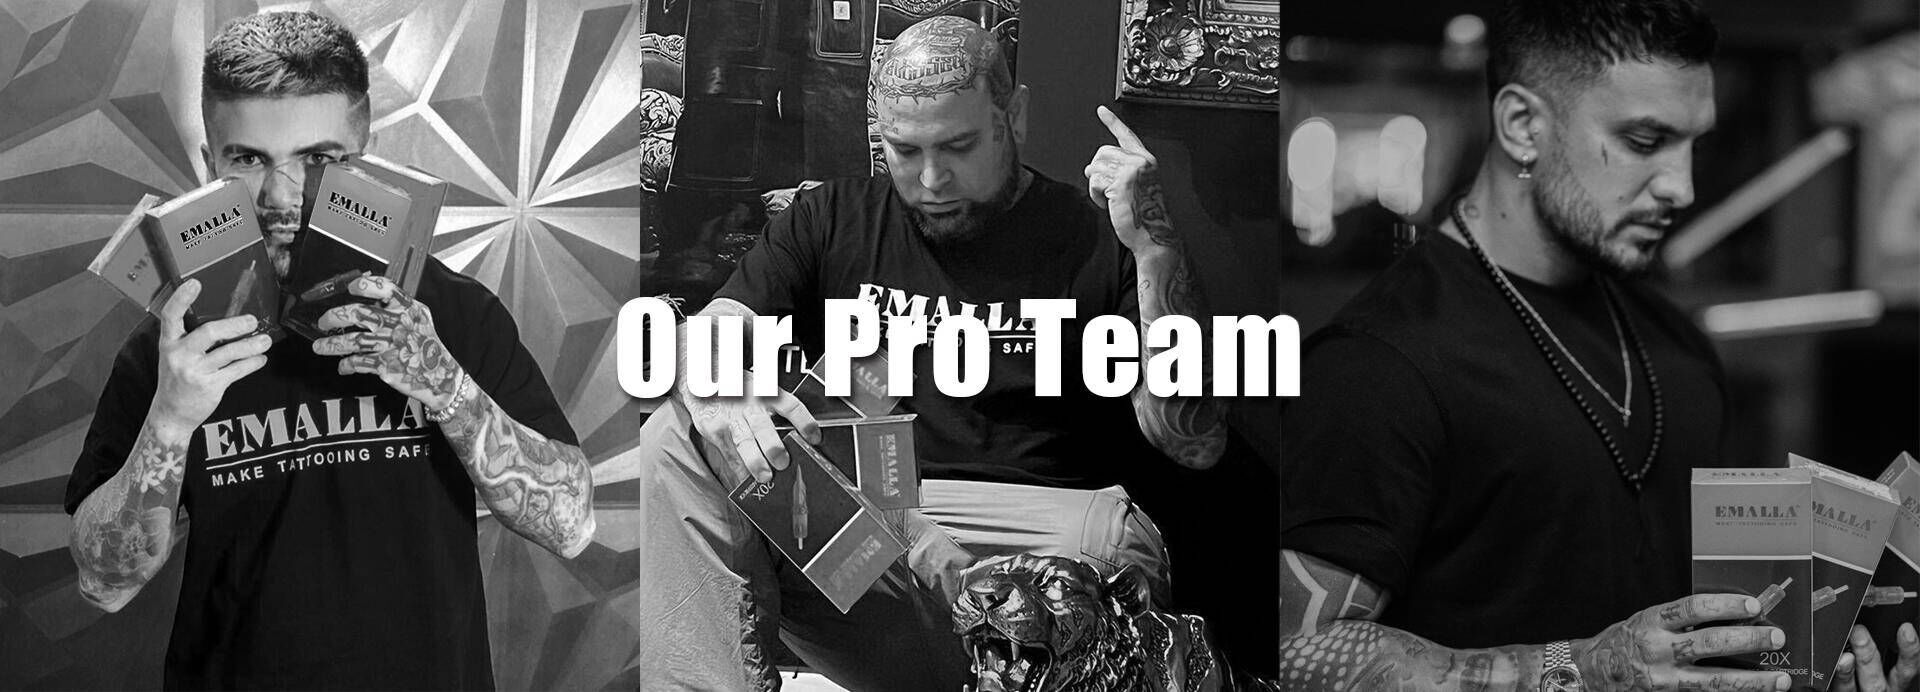 Our Pro Teams